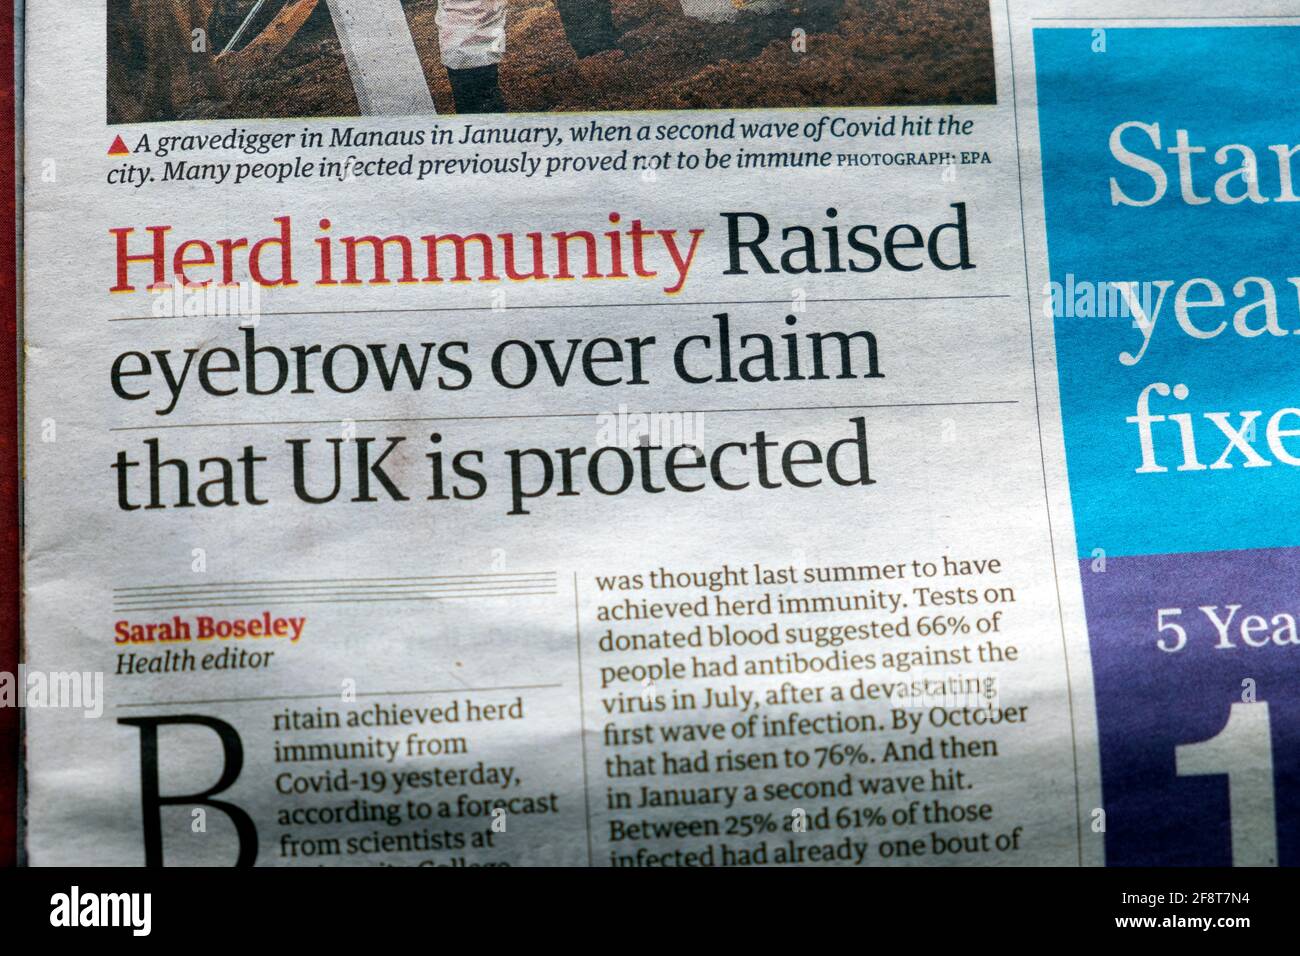 'La inmunidad de la manada elevó las cejas por encima de la afirmación de que el Reino Unido está protegido' Artículo principal del periódico Covid pandémico en Guardian London England Reino Unido 10 de abril de 2021 Foto de stock